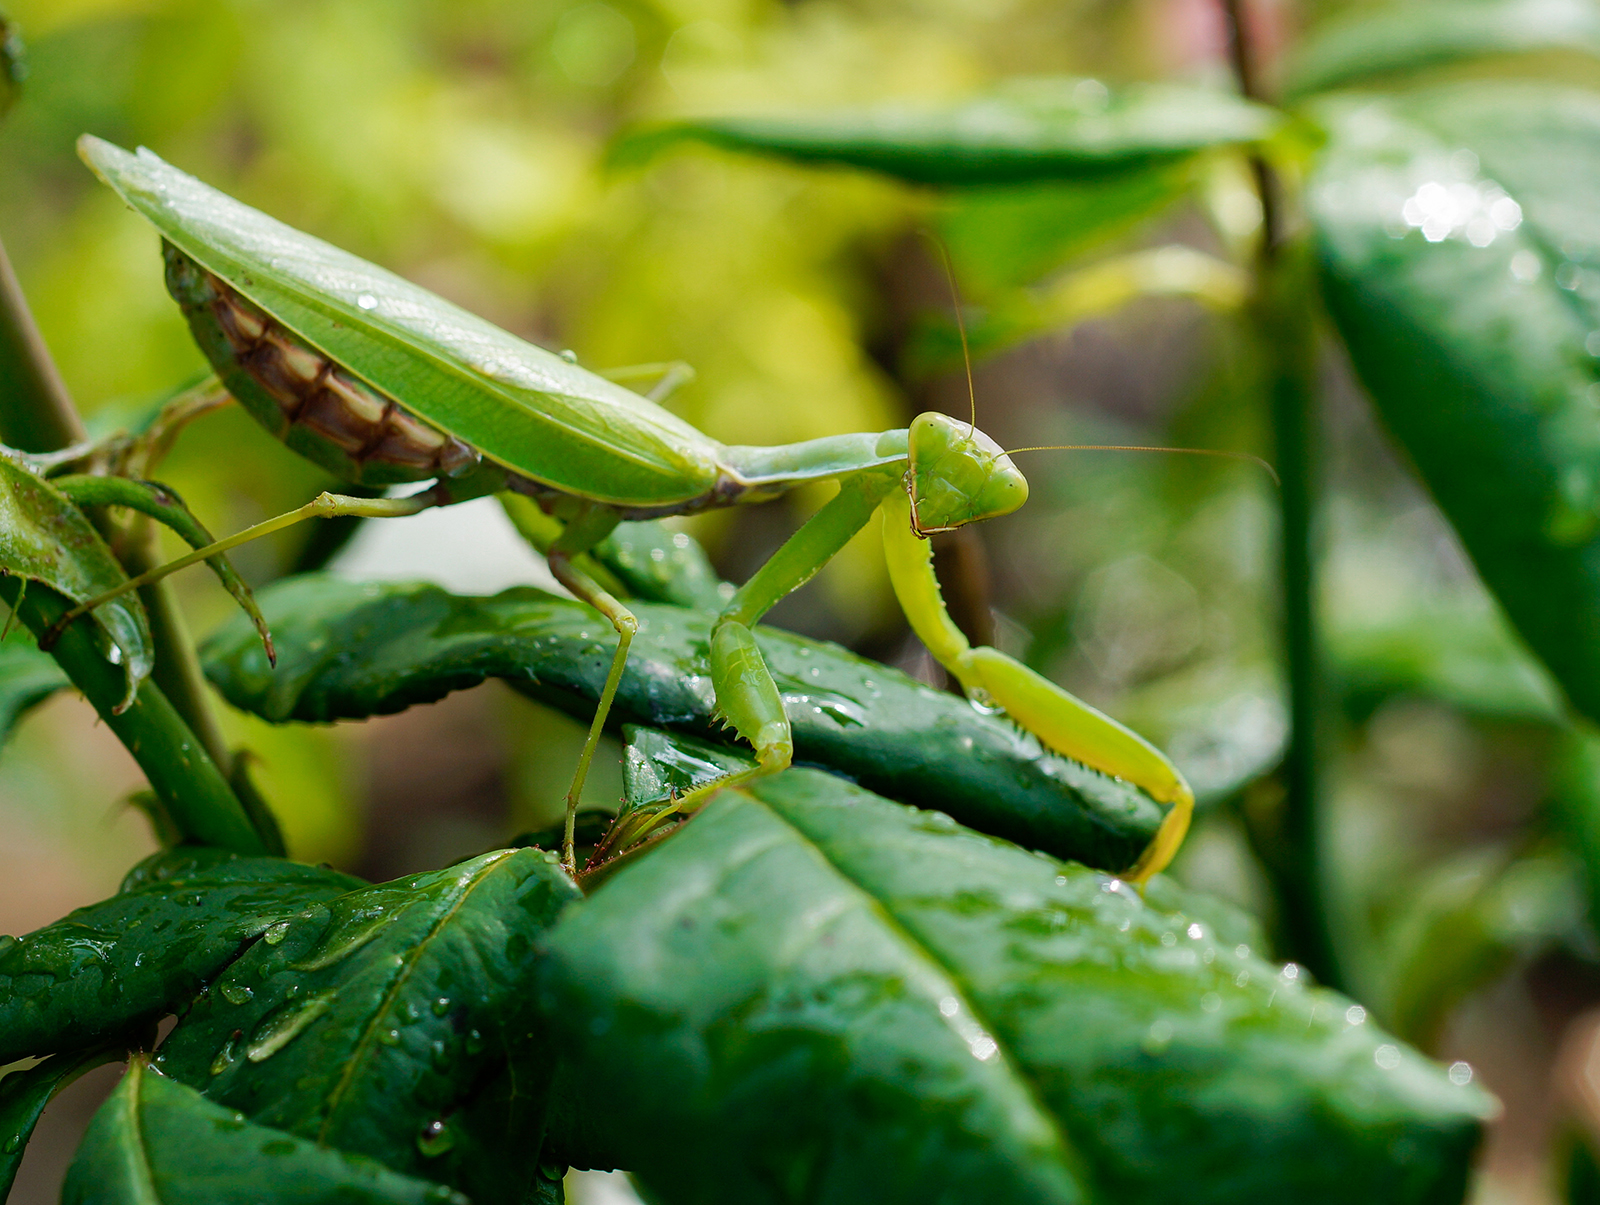 Can praying mantis damage plants?